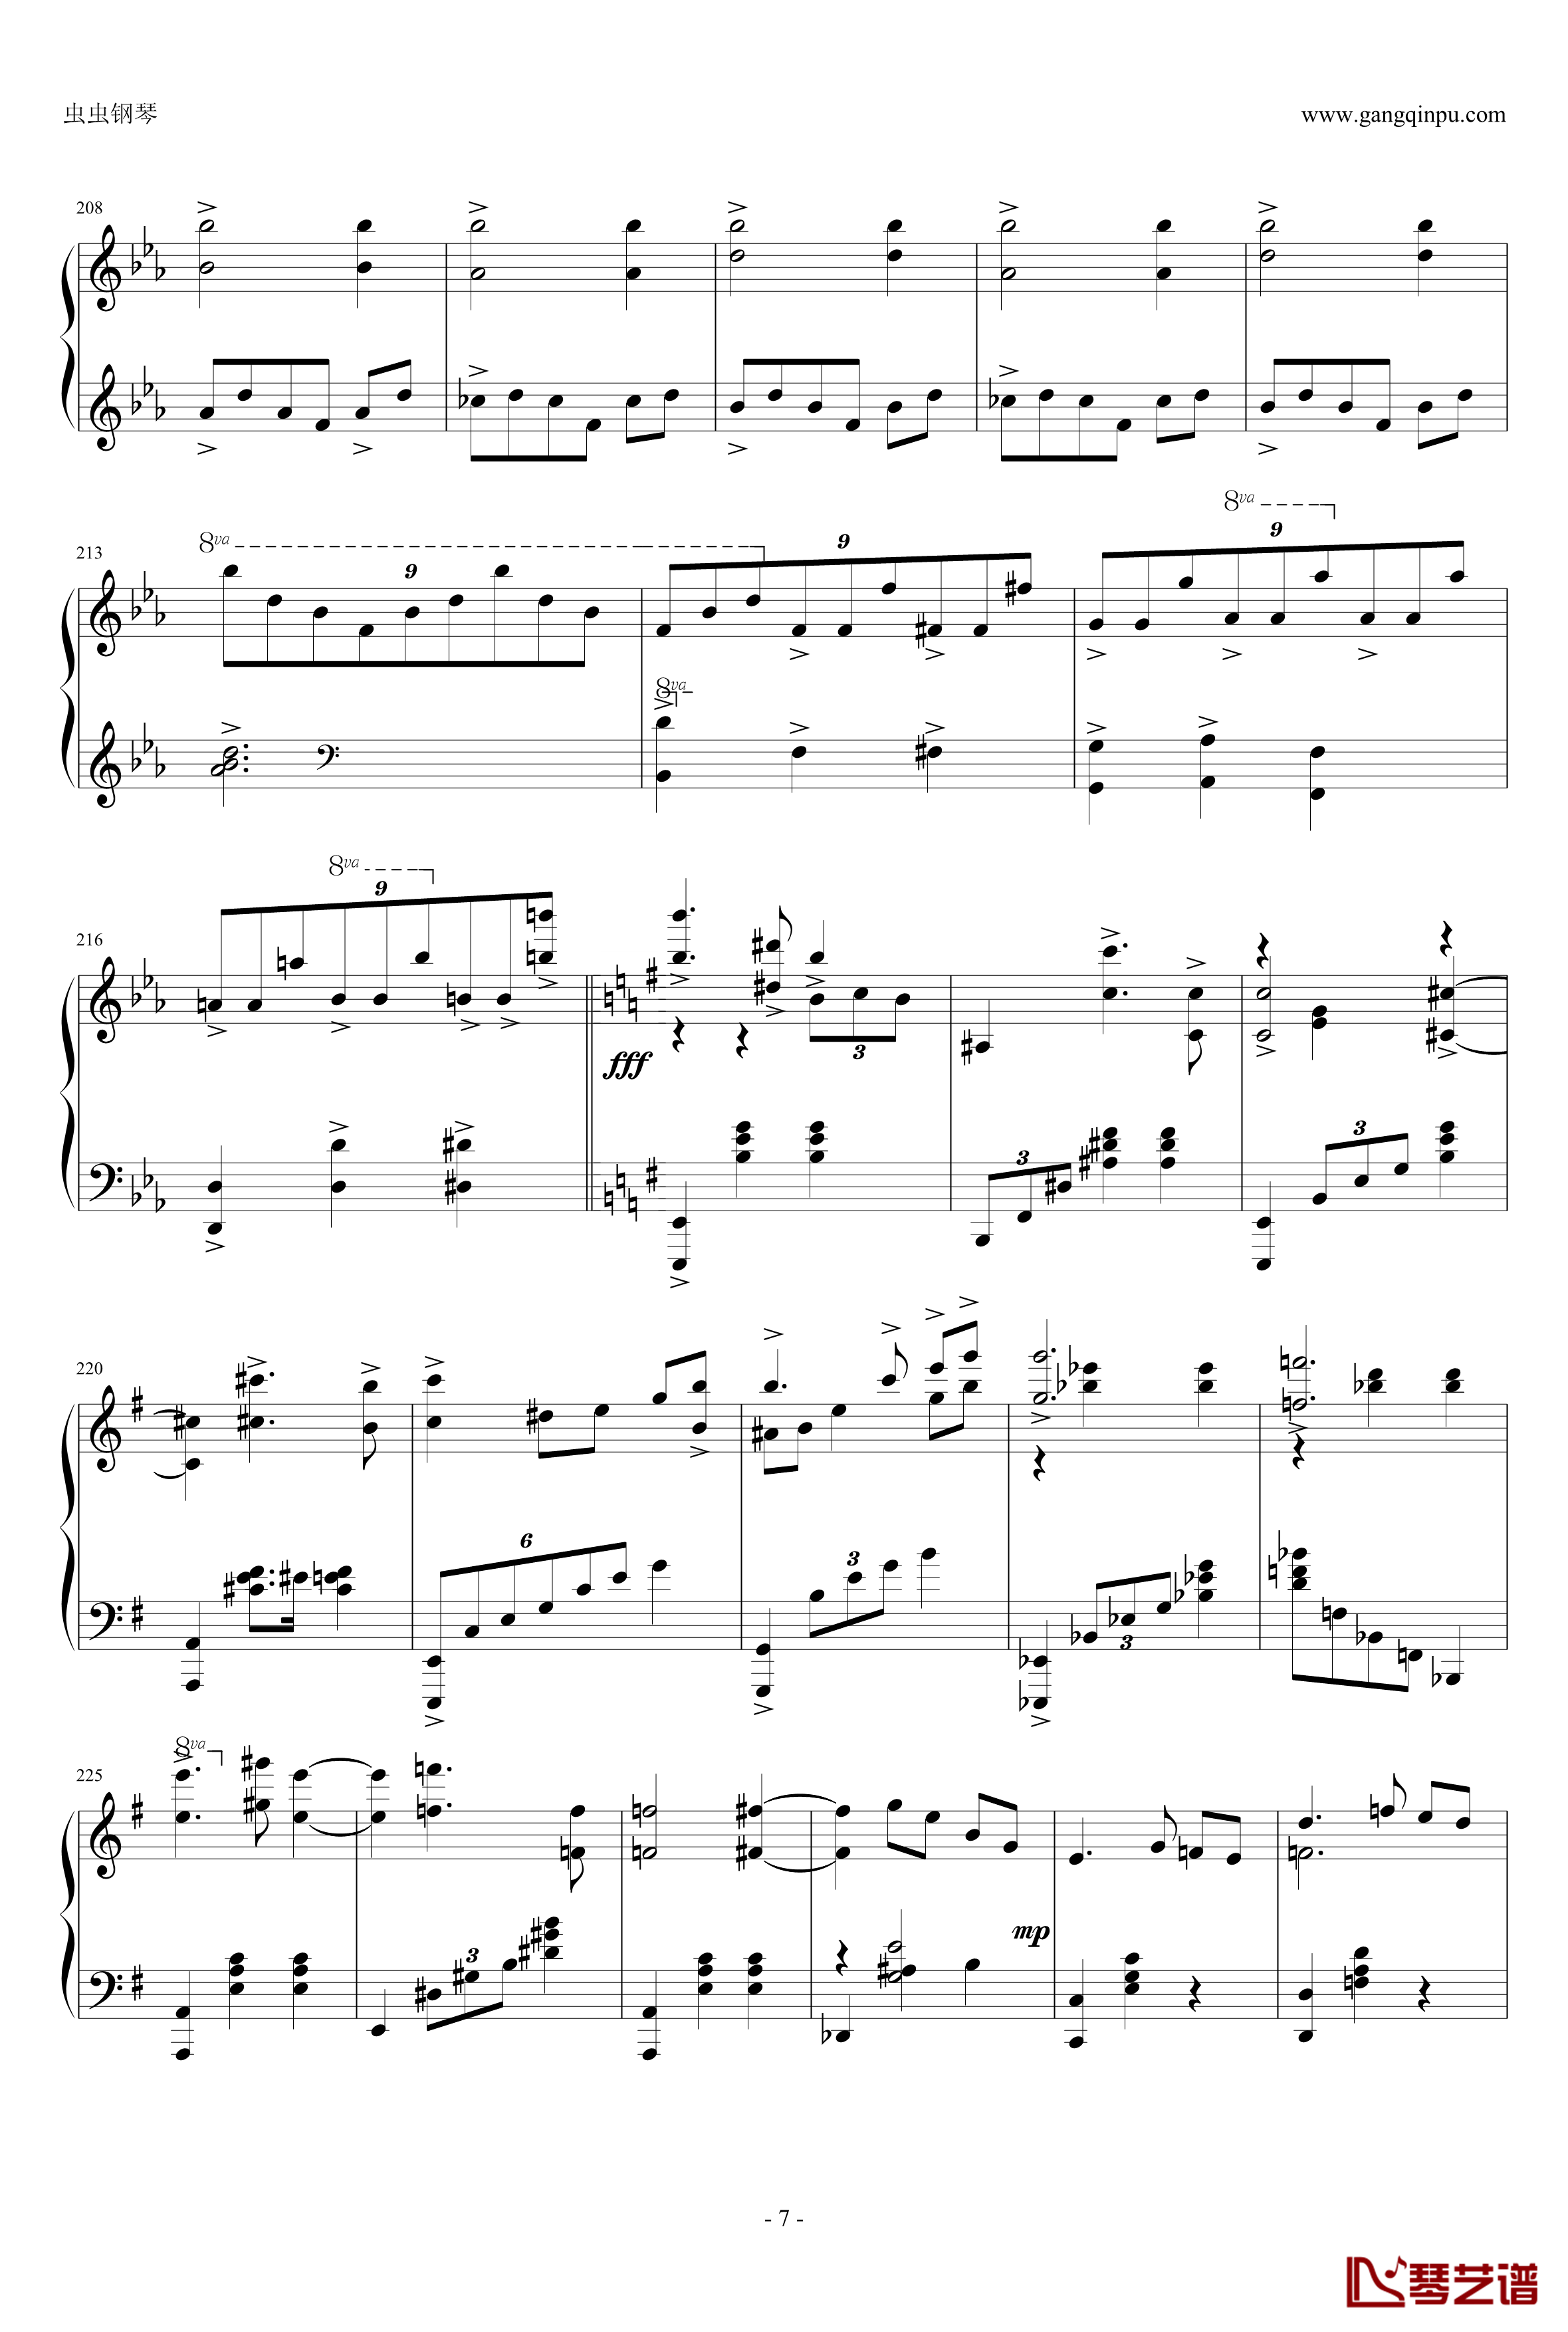 圆舞曲钢琴谱-灰姑娘-普罗科非耶夫7